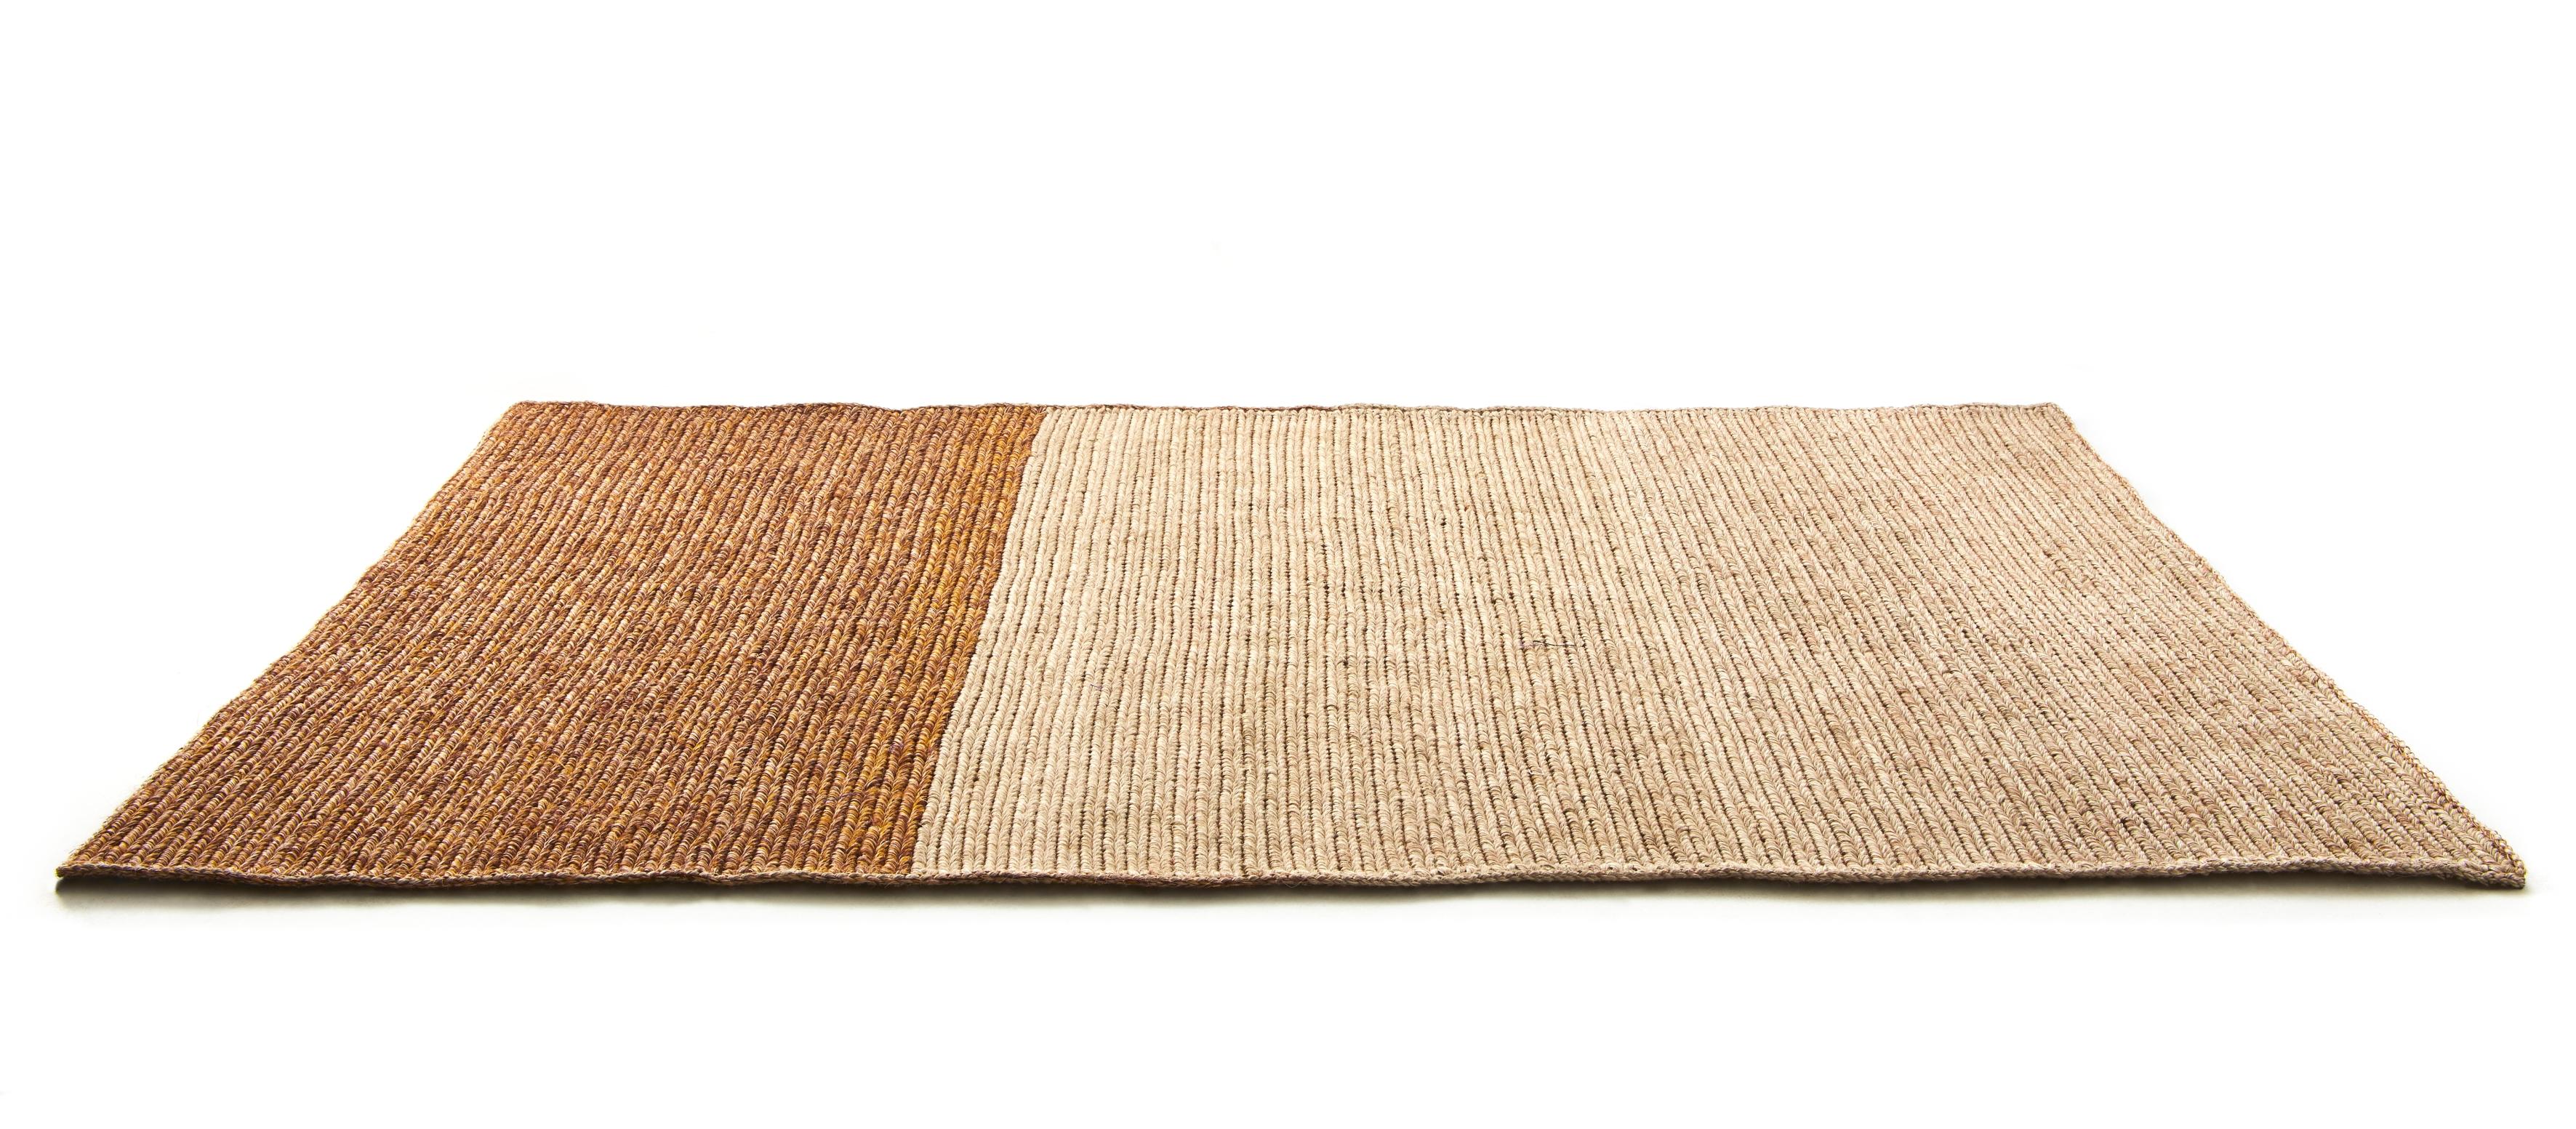 Petit tapis par Sebastian Herkner
Matériaux : Fibres de feuilles de palmier Jipi. 
Technique : Fibres teintes naturellement. Tissé à la main en Colombie.
Dimensions : L 160 x L 220 cm 
Disponible dans les couleurs suivantes : mélangé cacao/